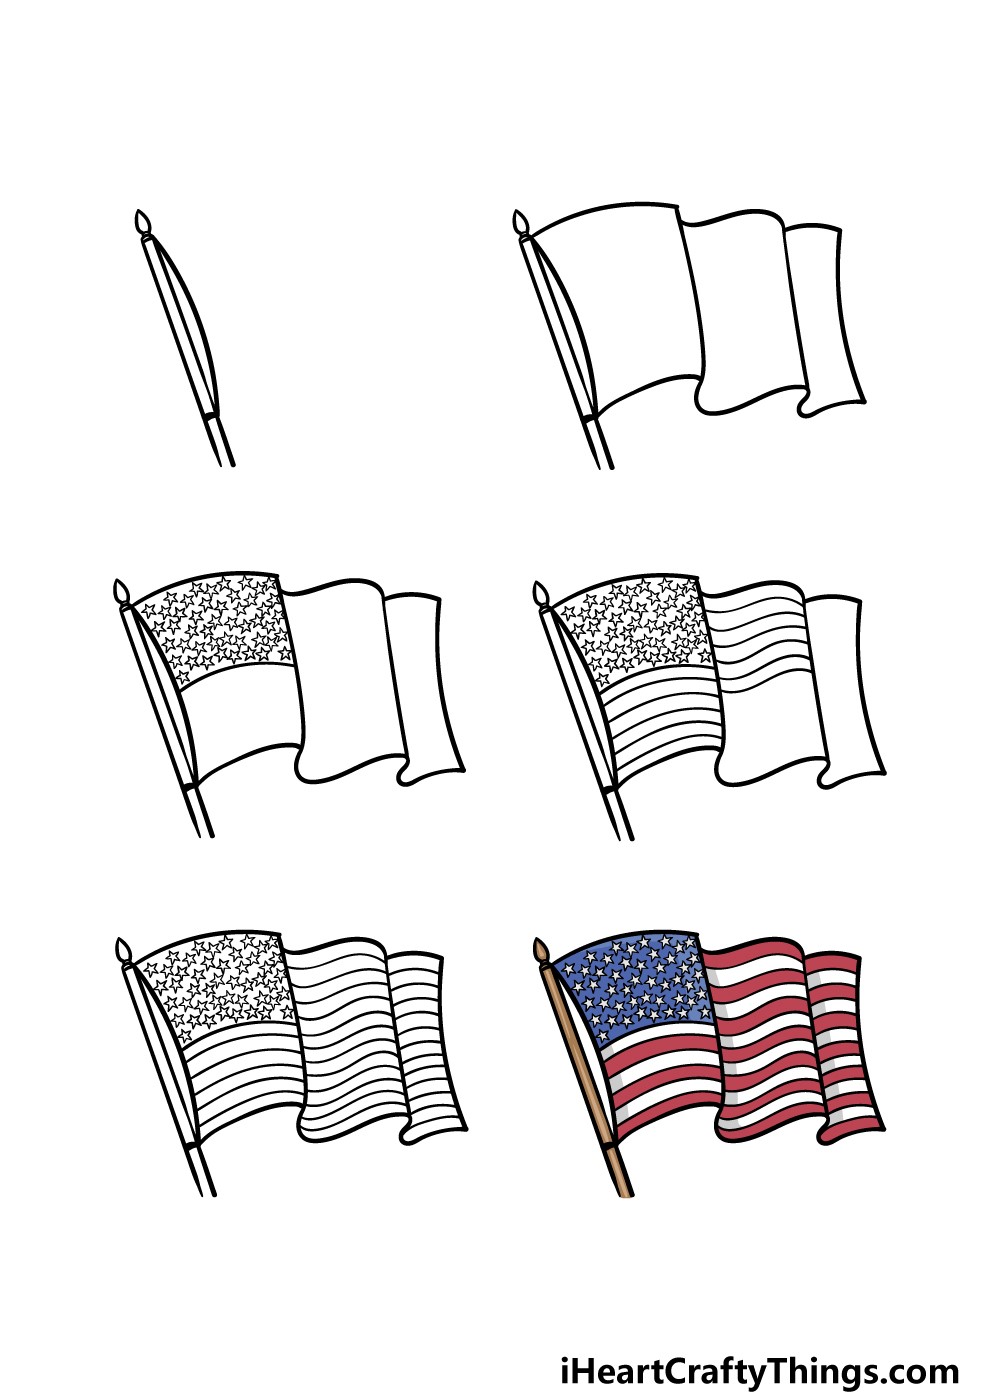 American Flag idea 4 Drawing Ideas